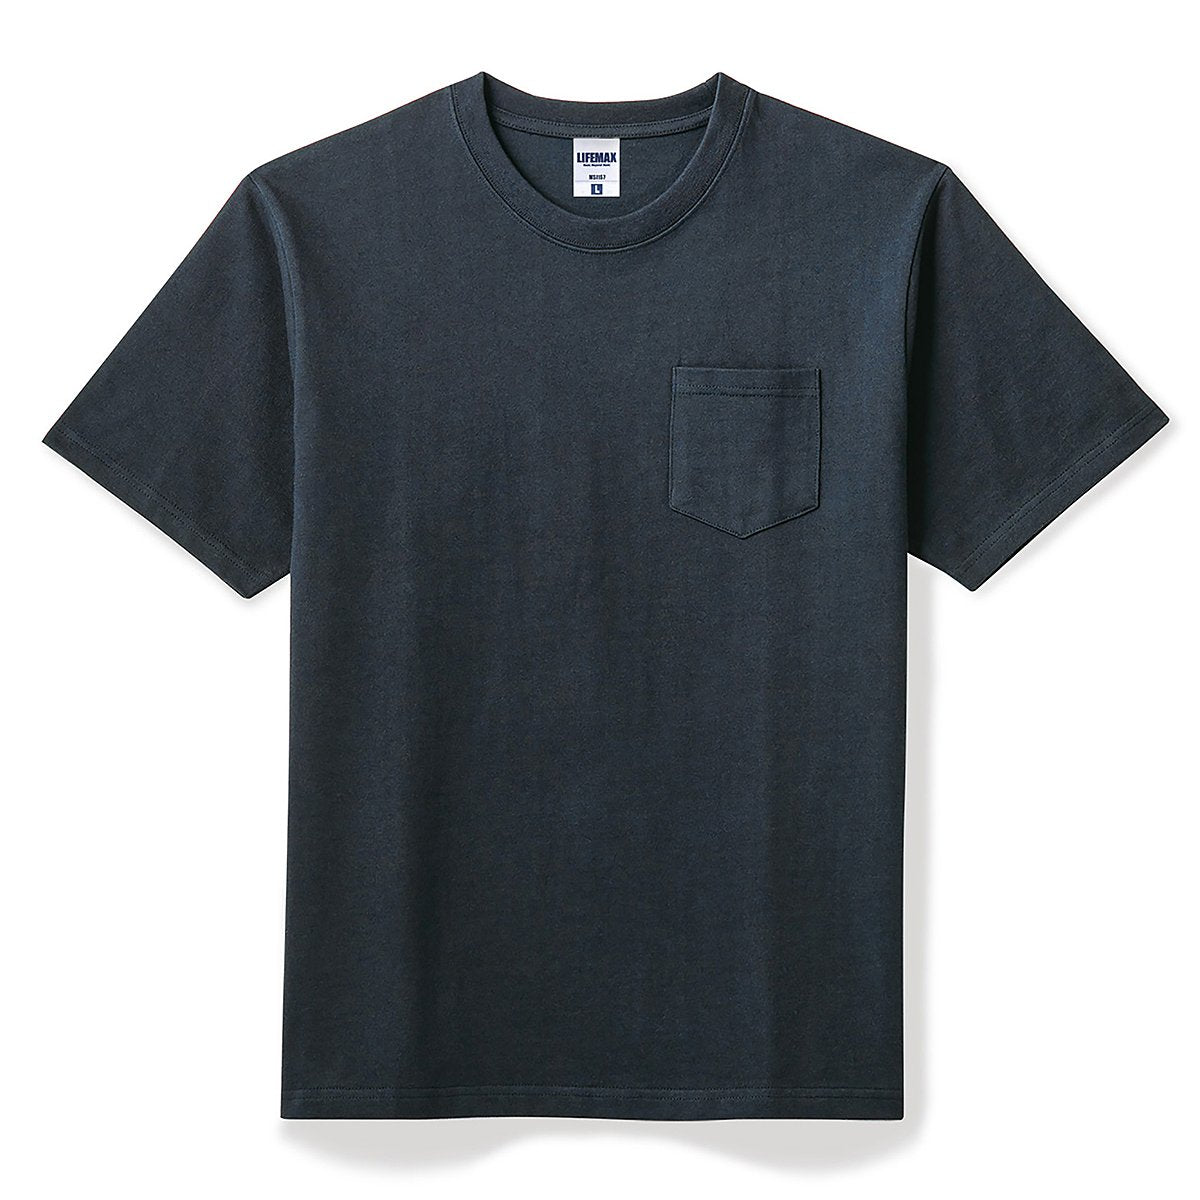 ネイビー(紺) – Tshirt.stビジネス